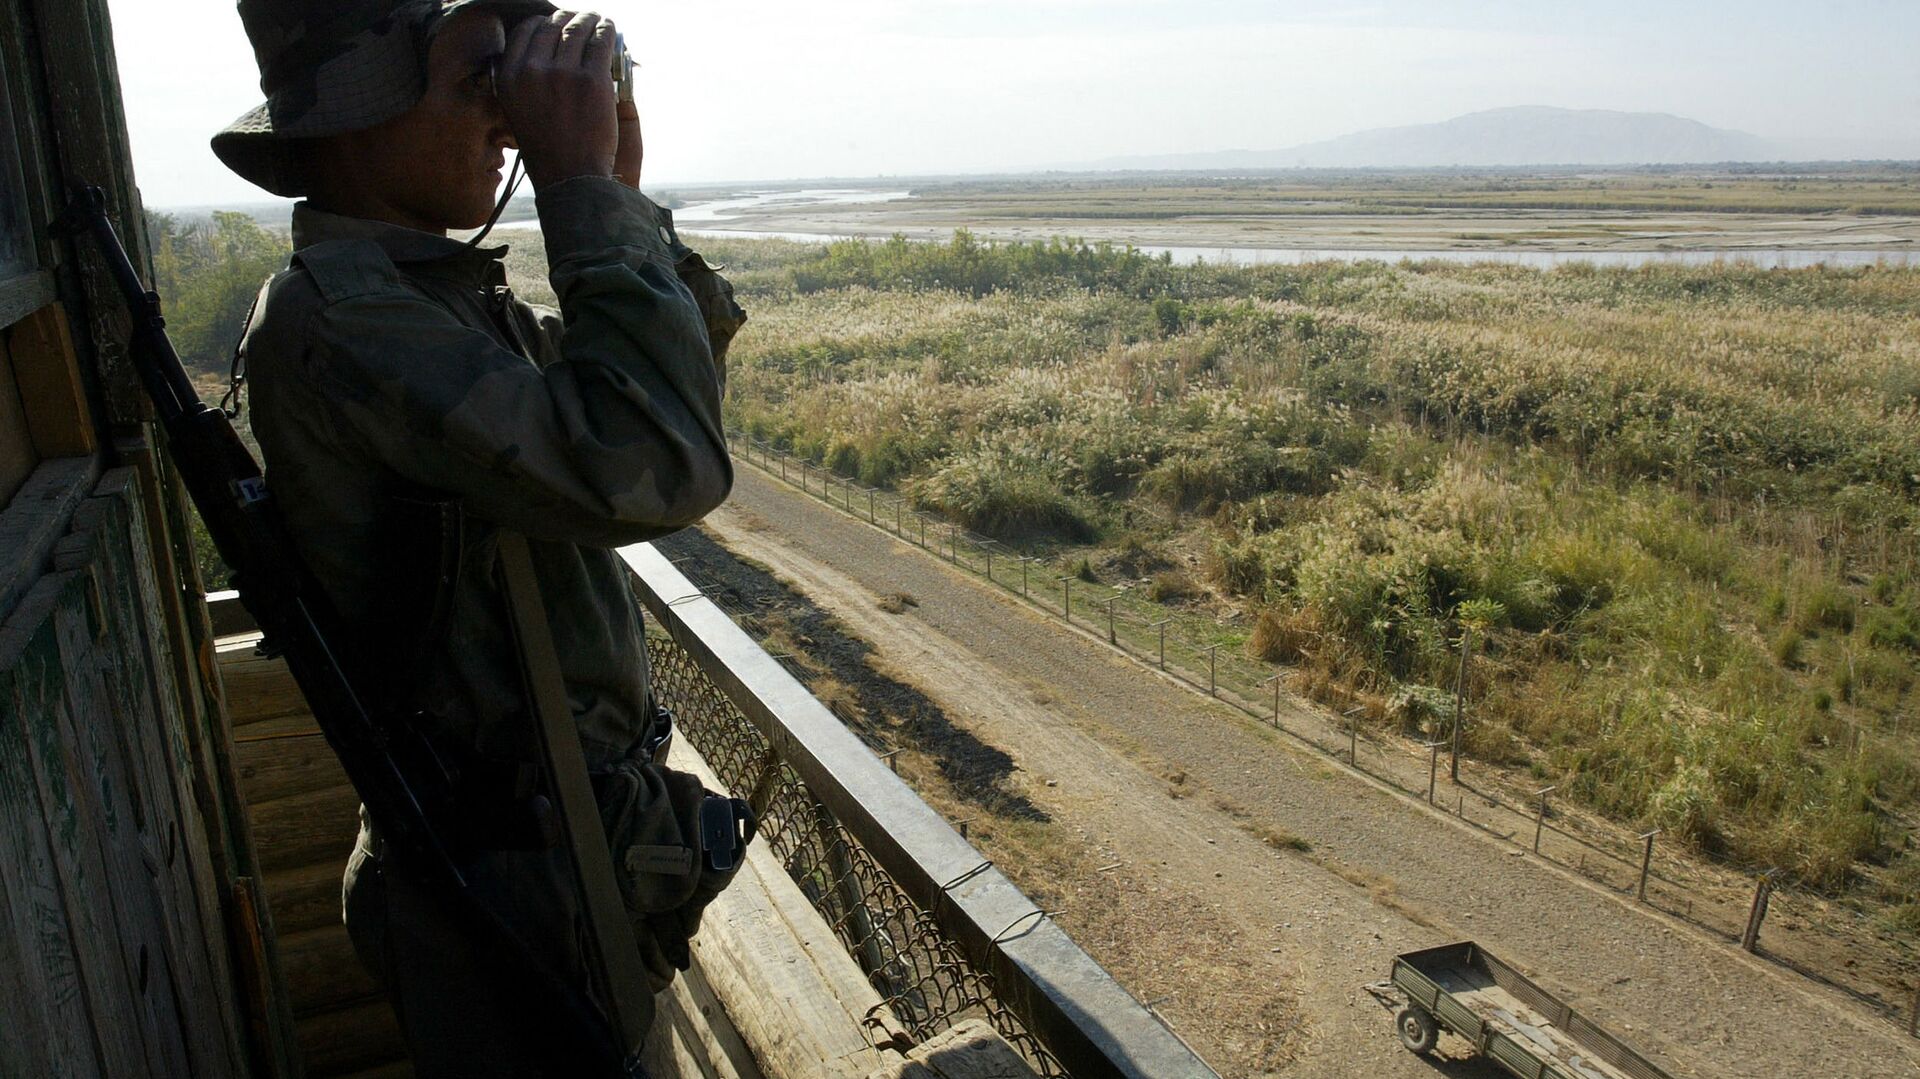 Солдат таджикской пограничной службы патрулирует реку Пяндж на границе с Афганистаном в 220 км от Душанбе - Sputnik Азербайджан, 1920, 06.06.2021